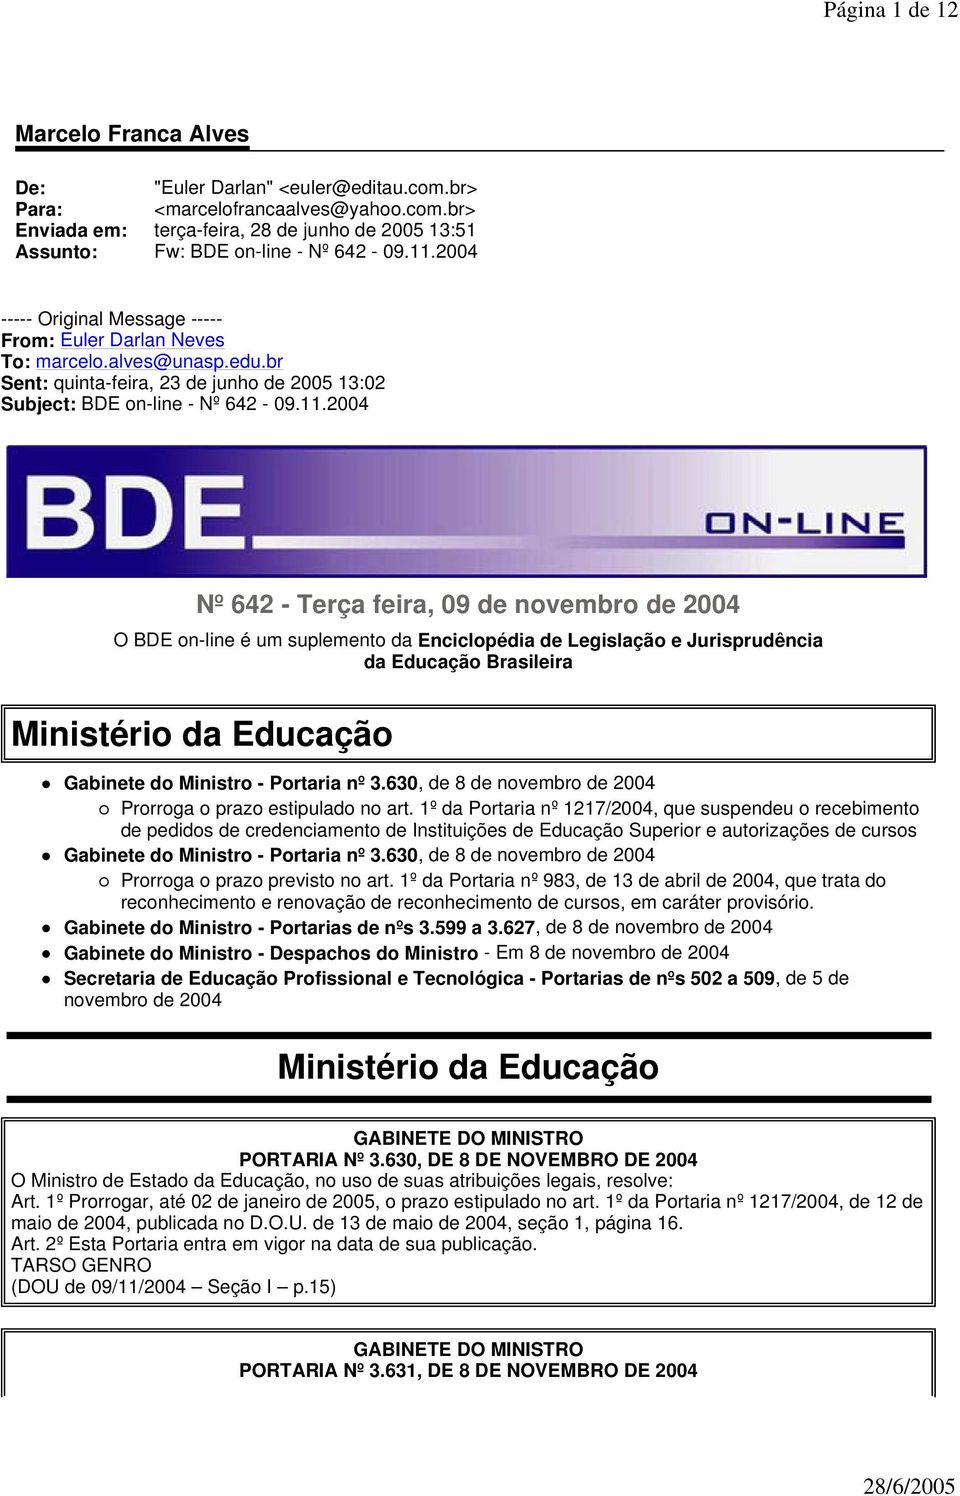 feira, 09 de novembro de 2004 O BDE on-line é um suplemento da Enciclopédia de Legislação e Jurisprudência da Educação Brasileira Ministério da Educação Gabinete do Ministro - Portaria nº 3.